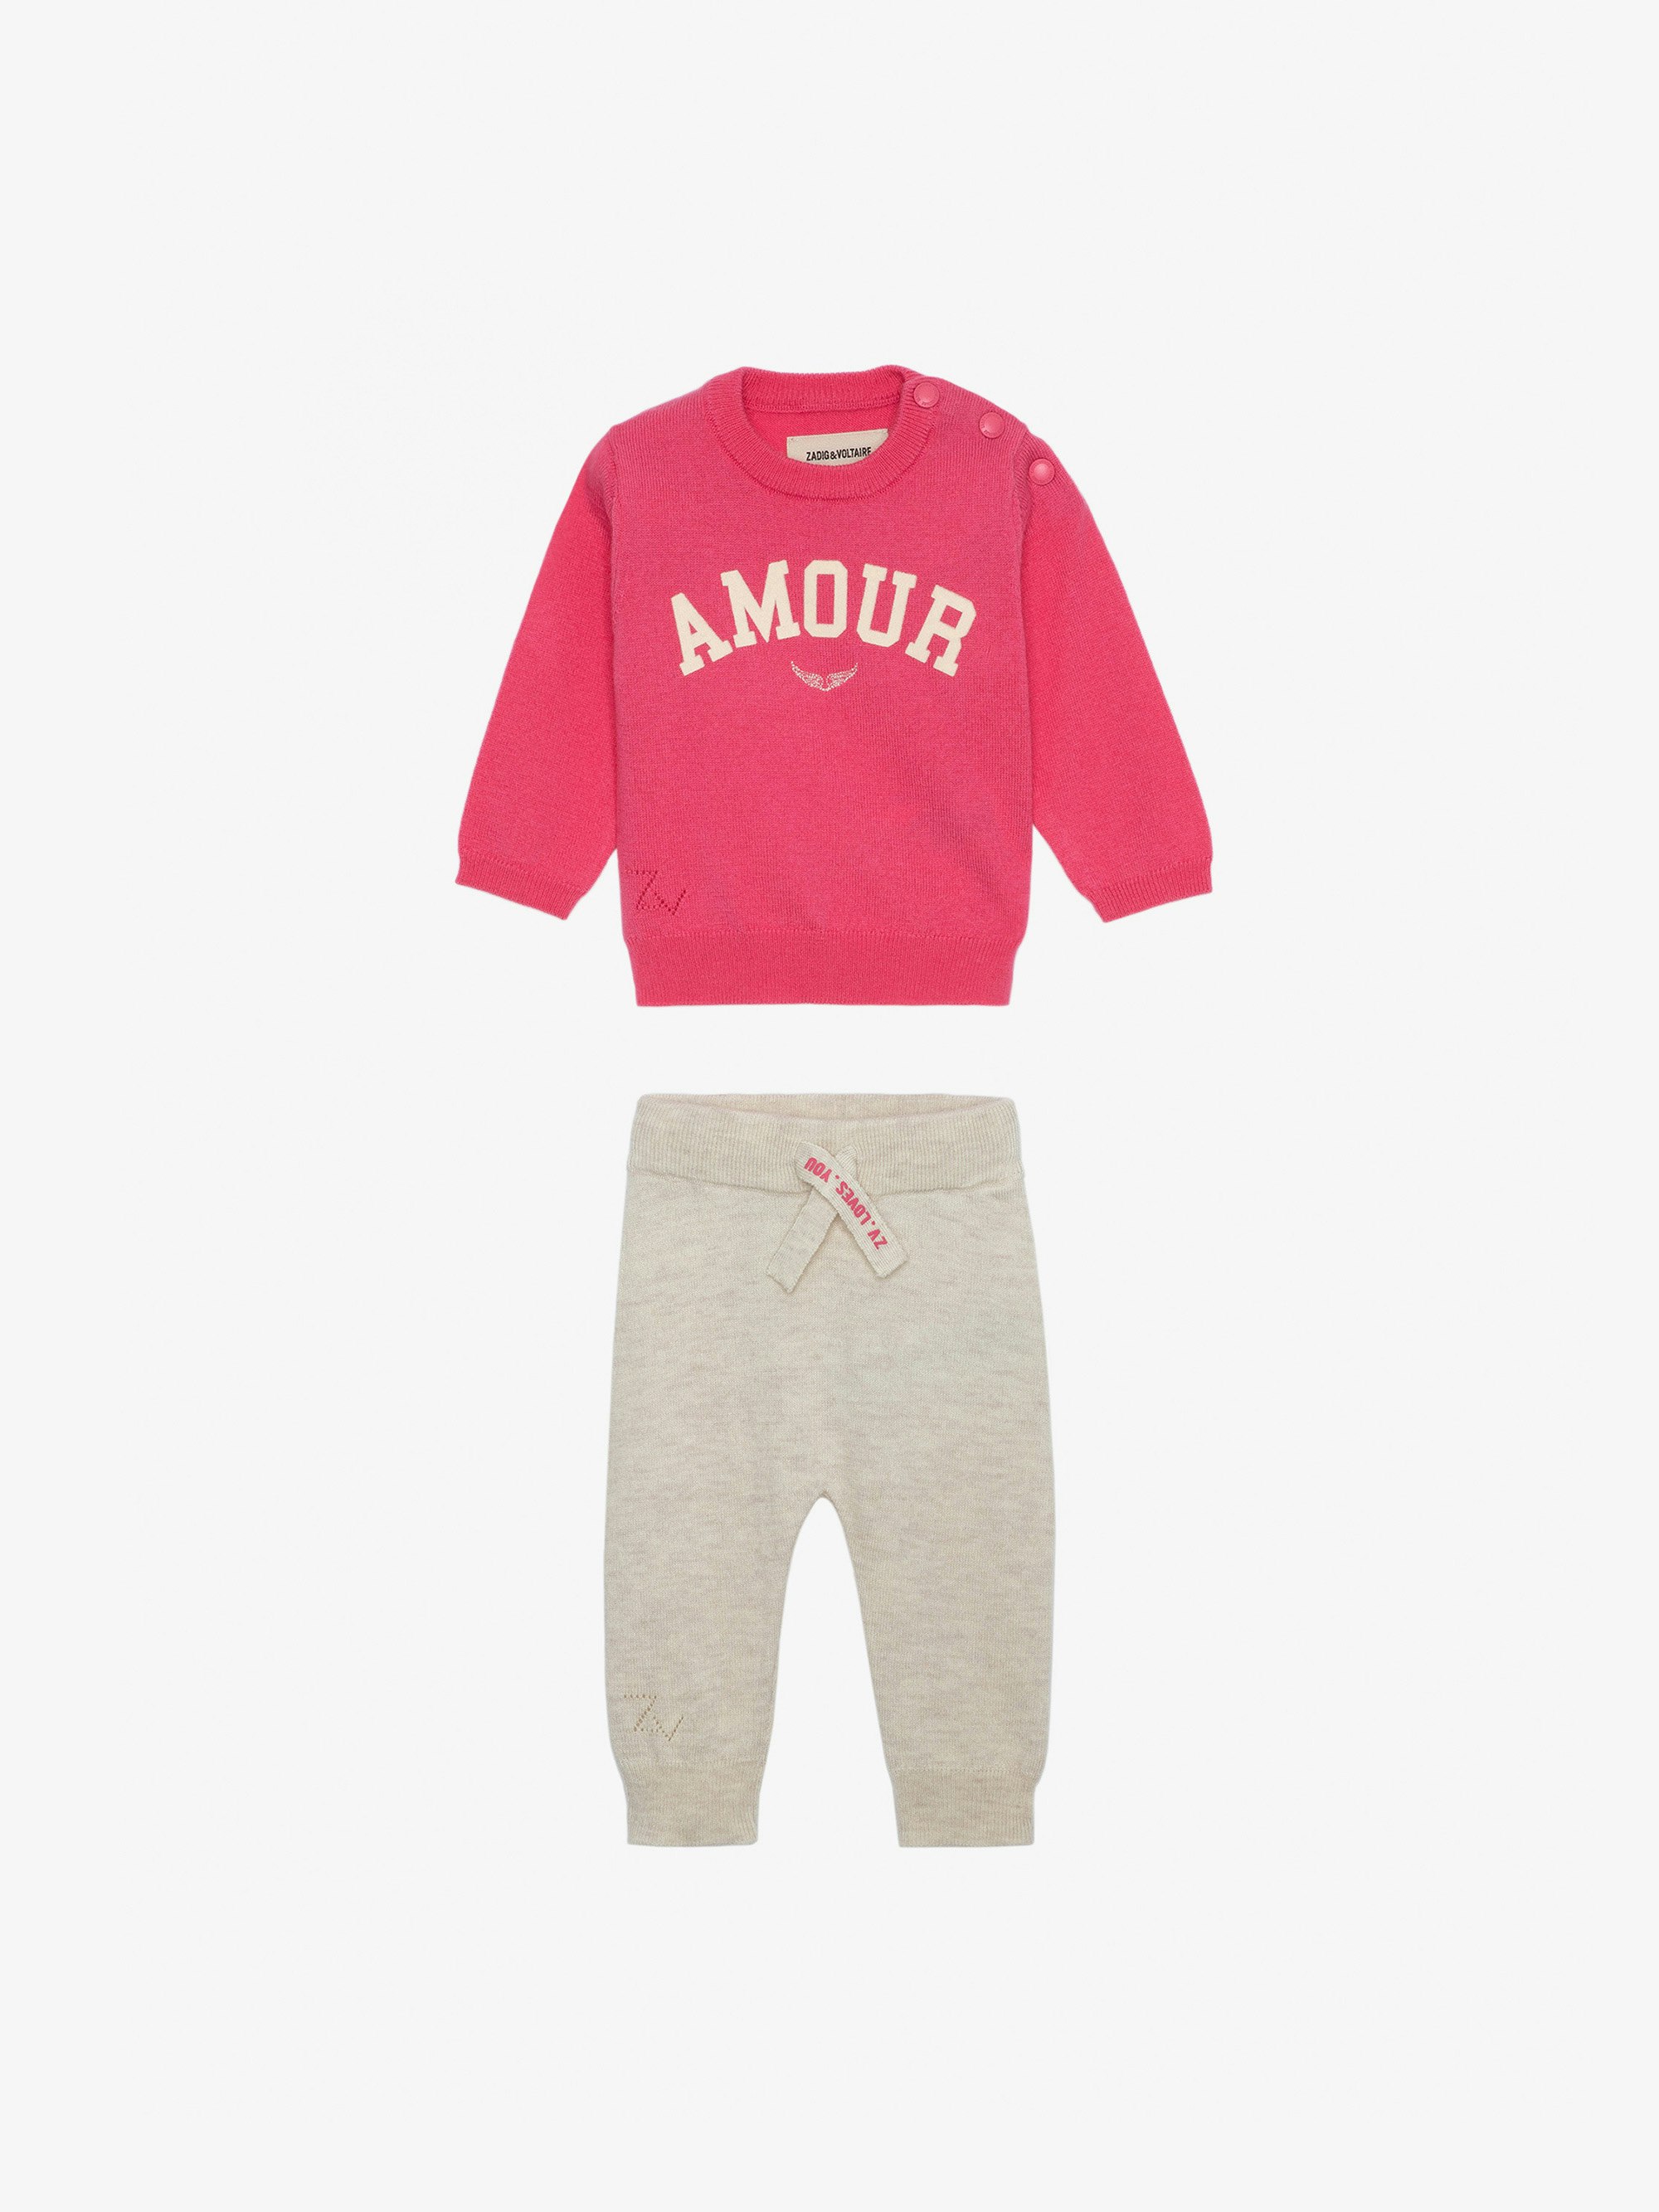 Conjunto Pona Bebé - Conjunto de jersey con mensaje «Amour» y de pantalón rosa de punto para bebé.